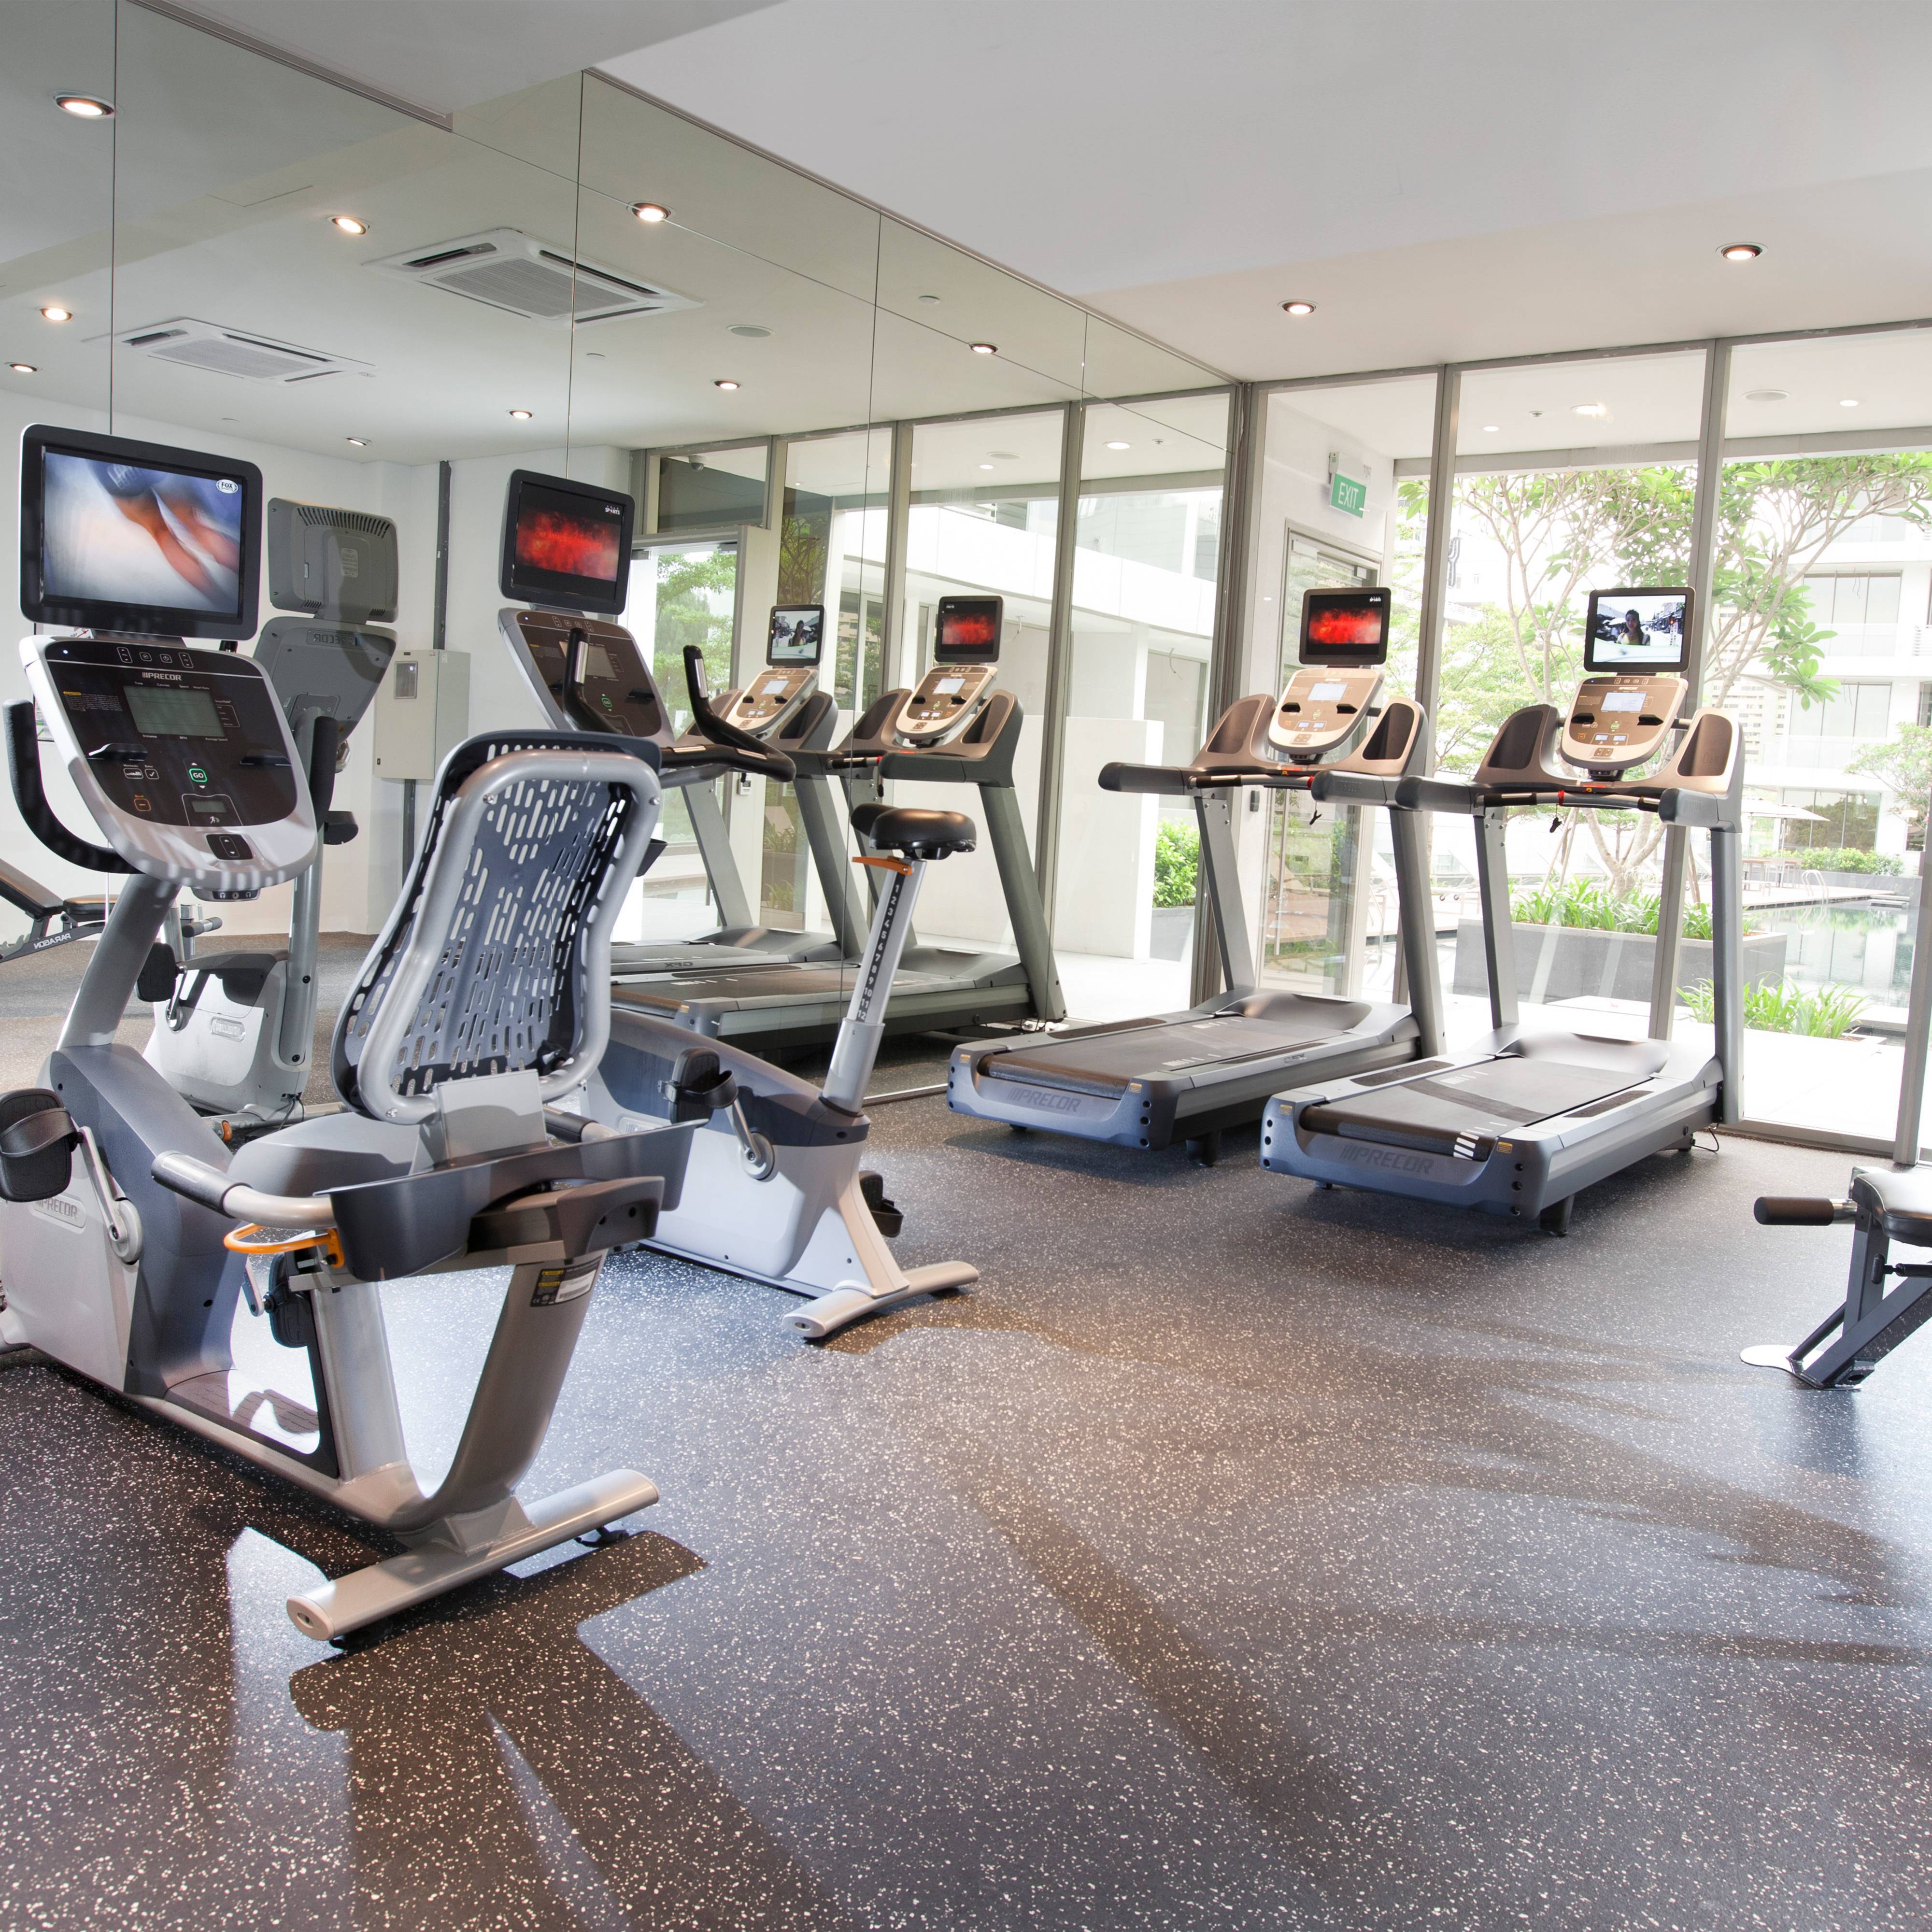 健身房: 在配置周全的健身房内锻炼身体、充电解压